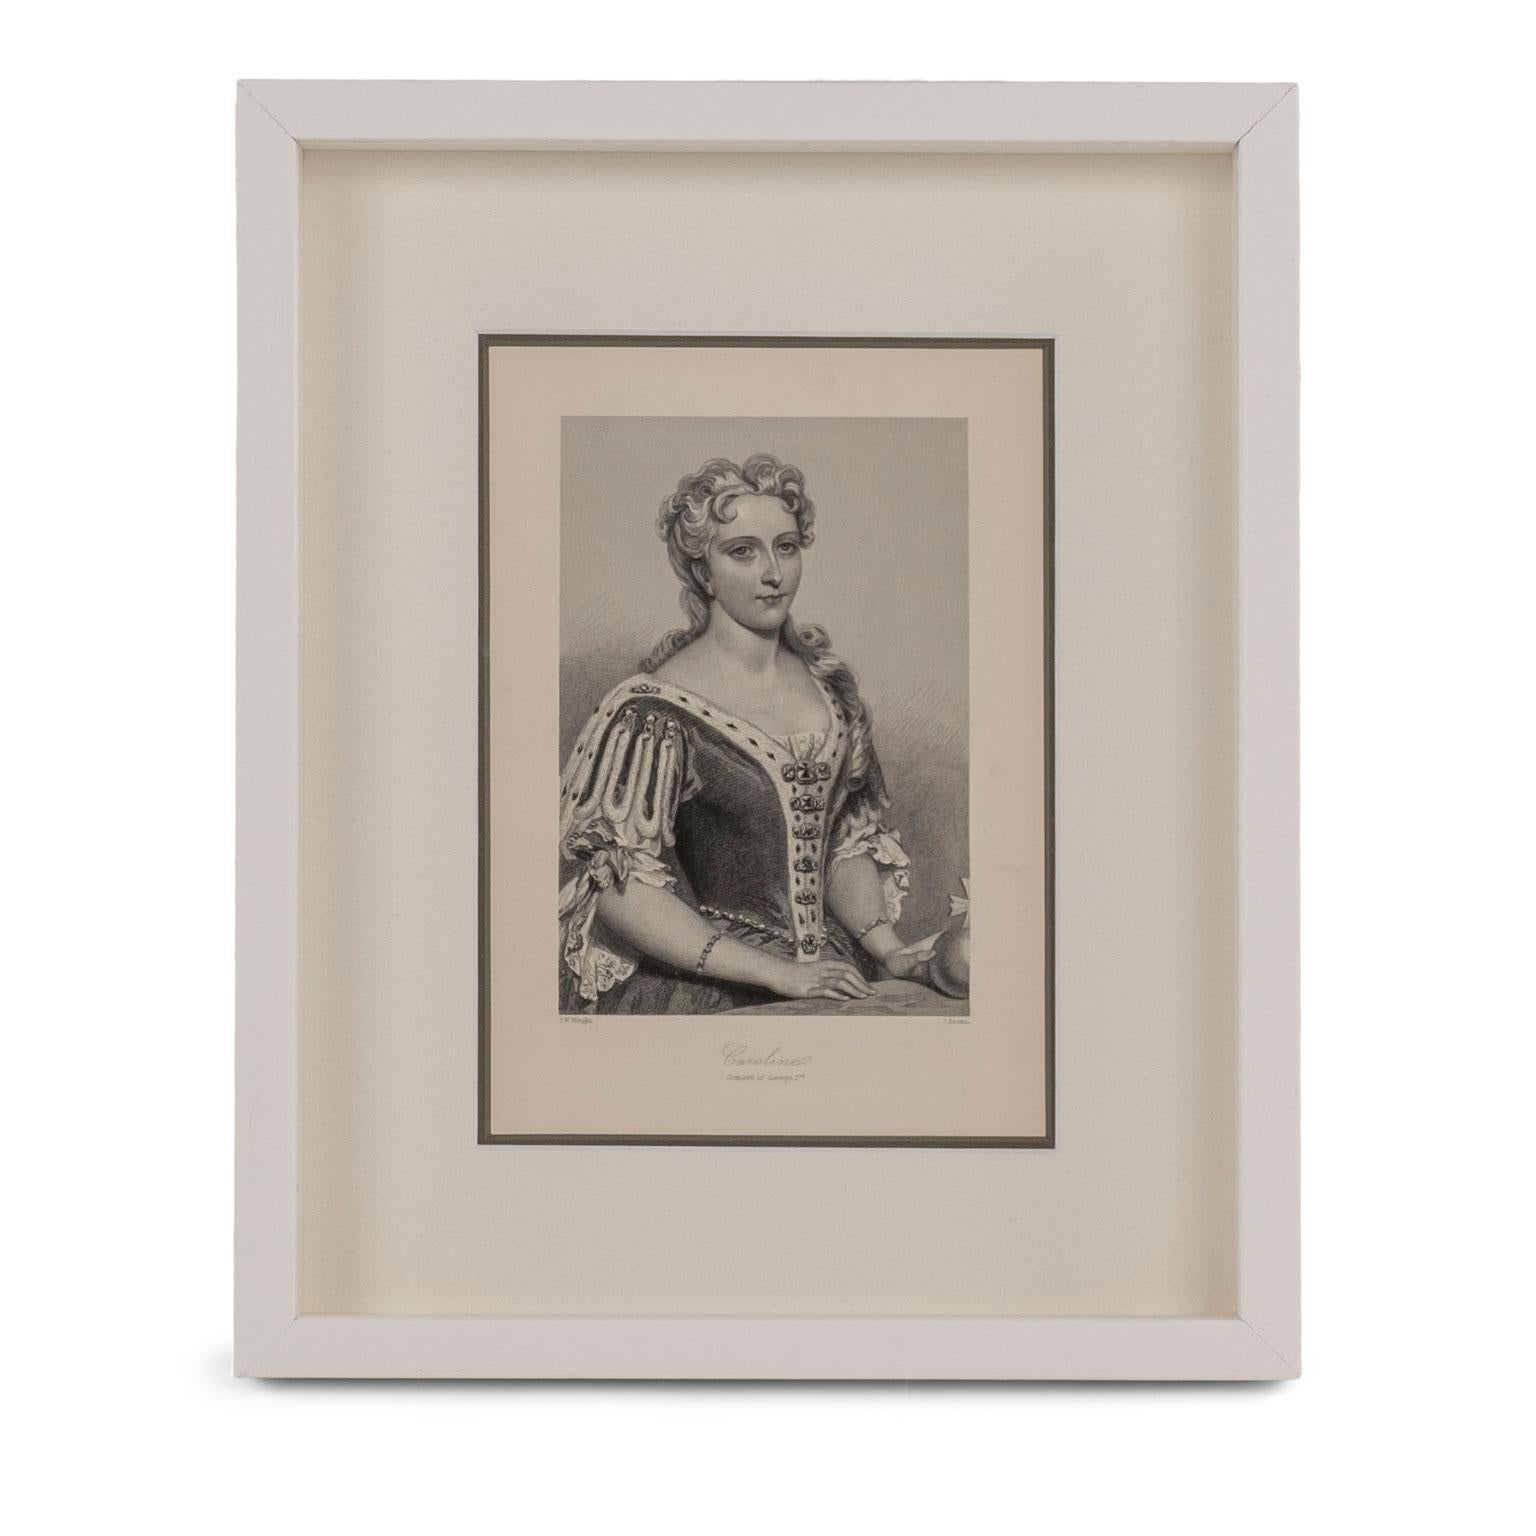 Gravures encadrées de reines anglaises : douze impressions à partir de plaques gravées sur acier extraites de 